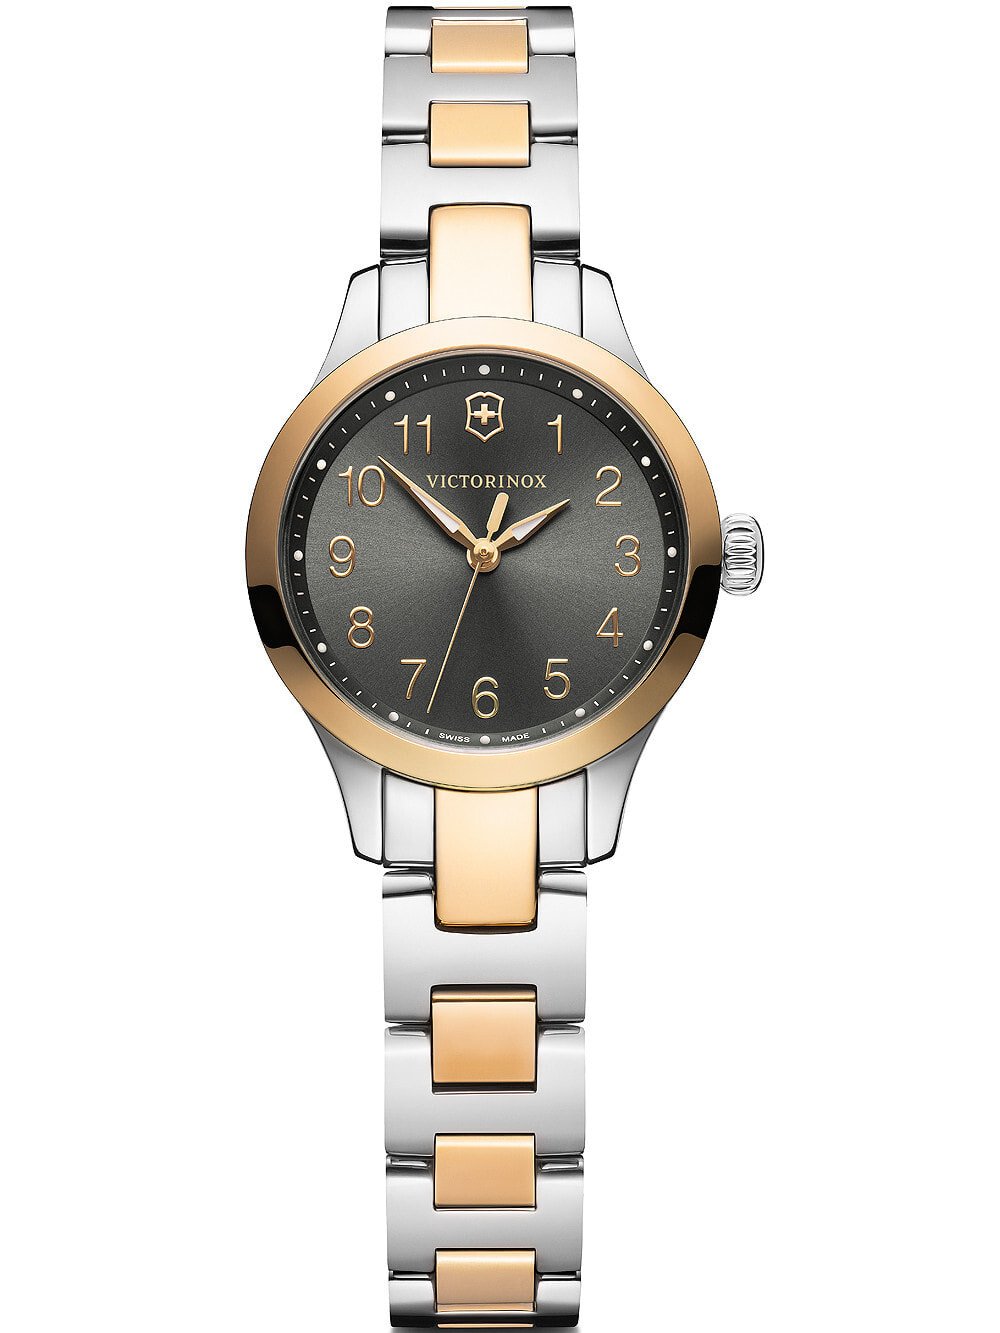 Женские наручные кварцевые часы Victorinox ремешок из нержавеющей стали. Водонепроницаемость-10 АТМ. Защищенное от царапин антибликовое сапфировое стекло.